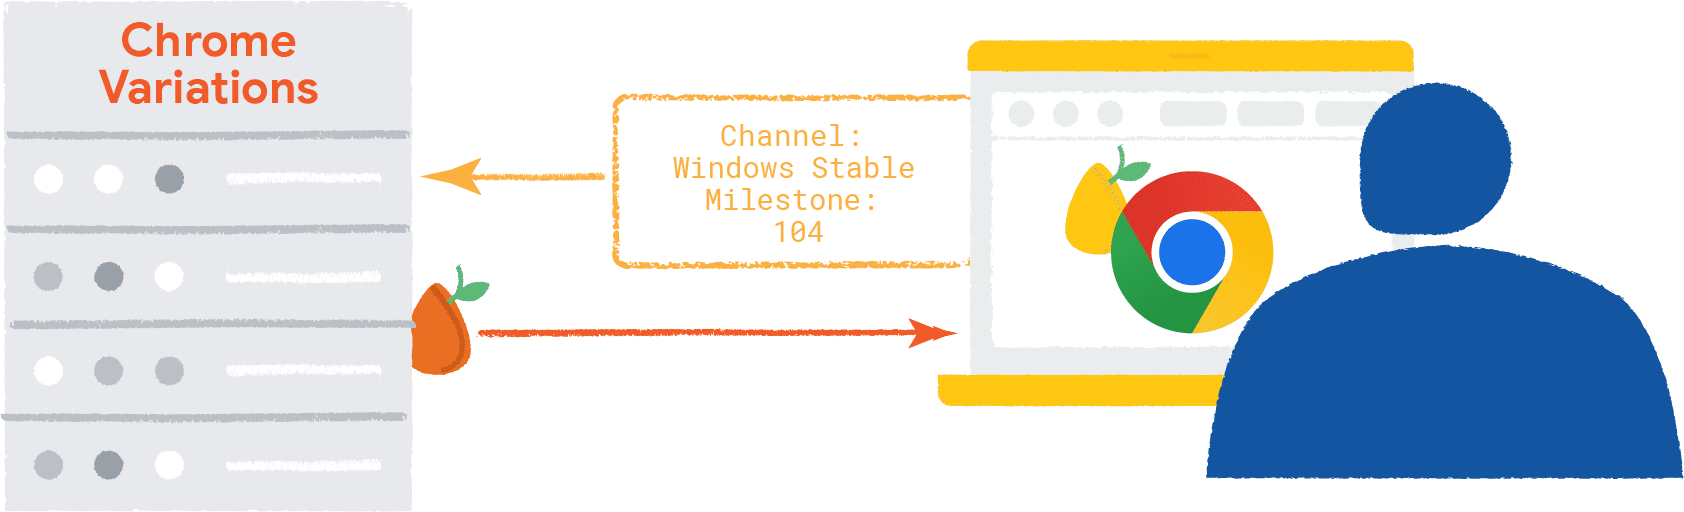 מידע על הדפדפן ומערכת ההפעלה שעוברים לגרסה העורפית של הגרסאות של Chrome. המקור של הווריאציות של Chrome עובר לדפדפן, שמכיל מקור אקראי של וריאציות.